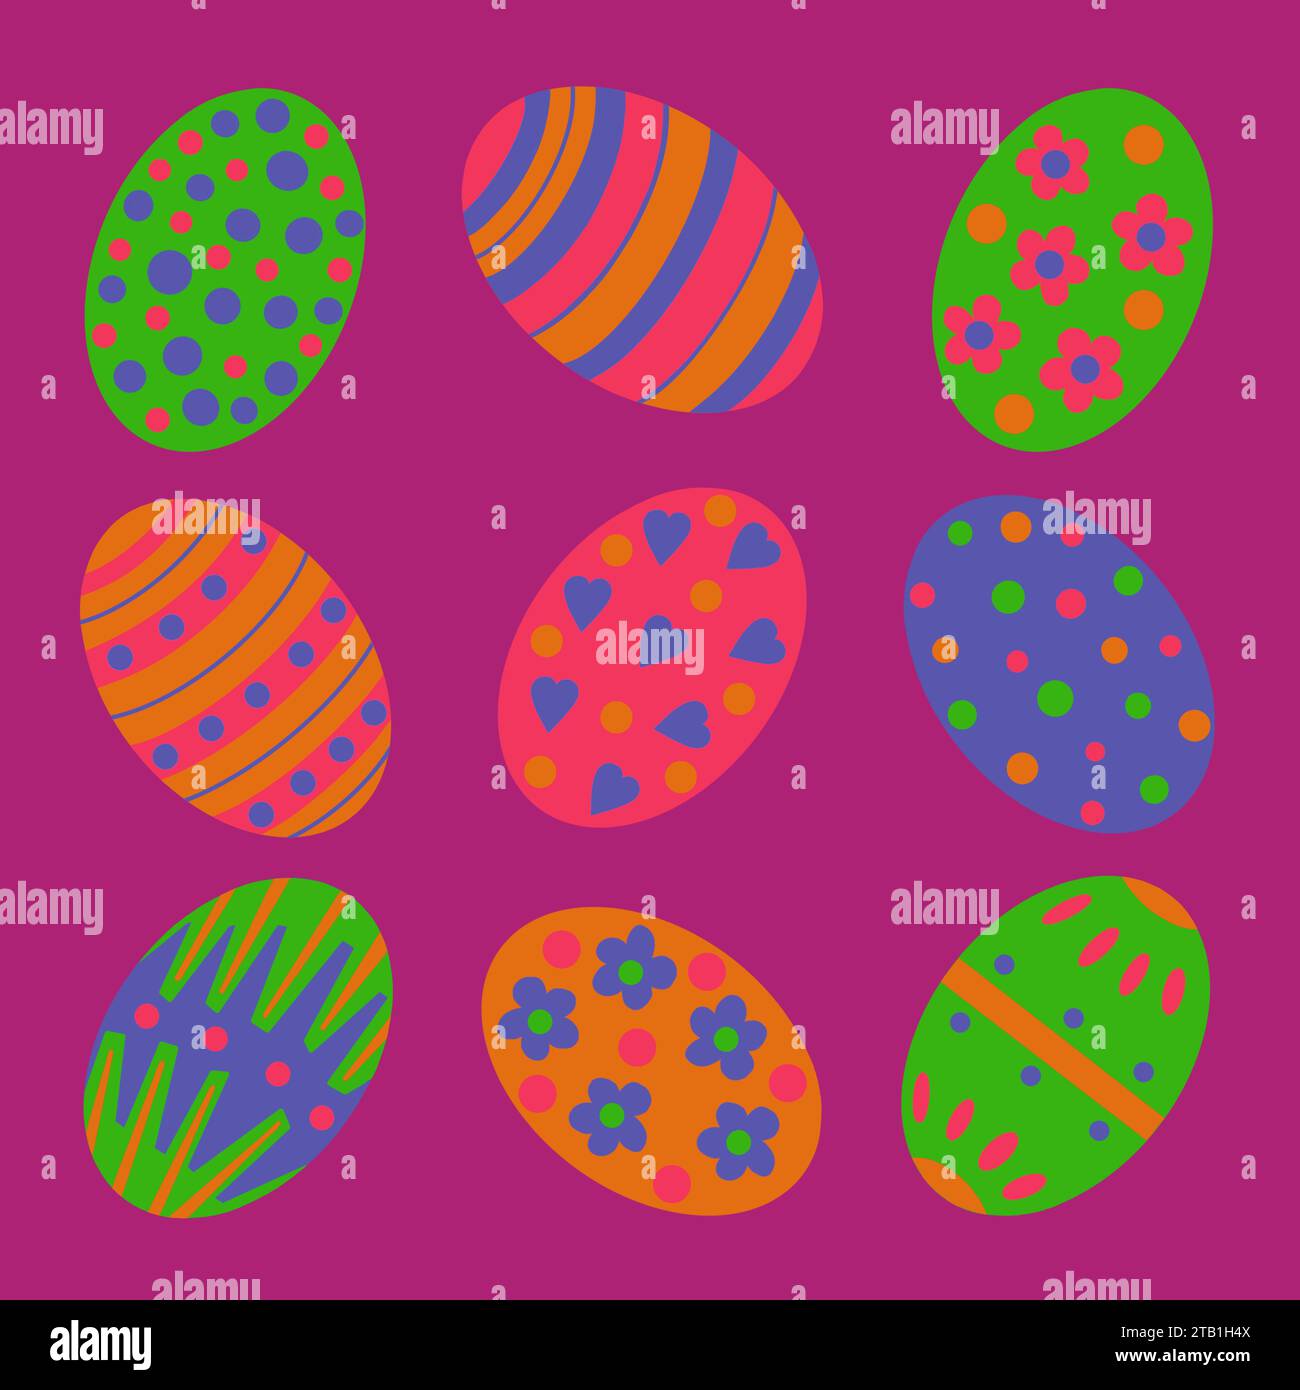 Illustration d'oeuf de Pâques. Oeufs de Pâques décoratifs dans un arrangement original. Pois, rayures, zigzags et fleurs. Oeufs de Pâques lumineux et colorés Banque D'Images